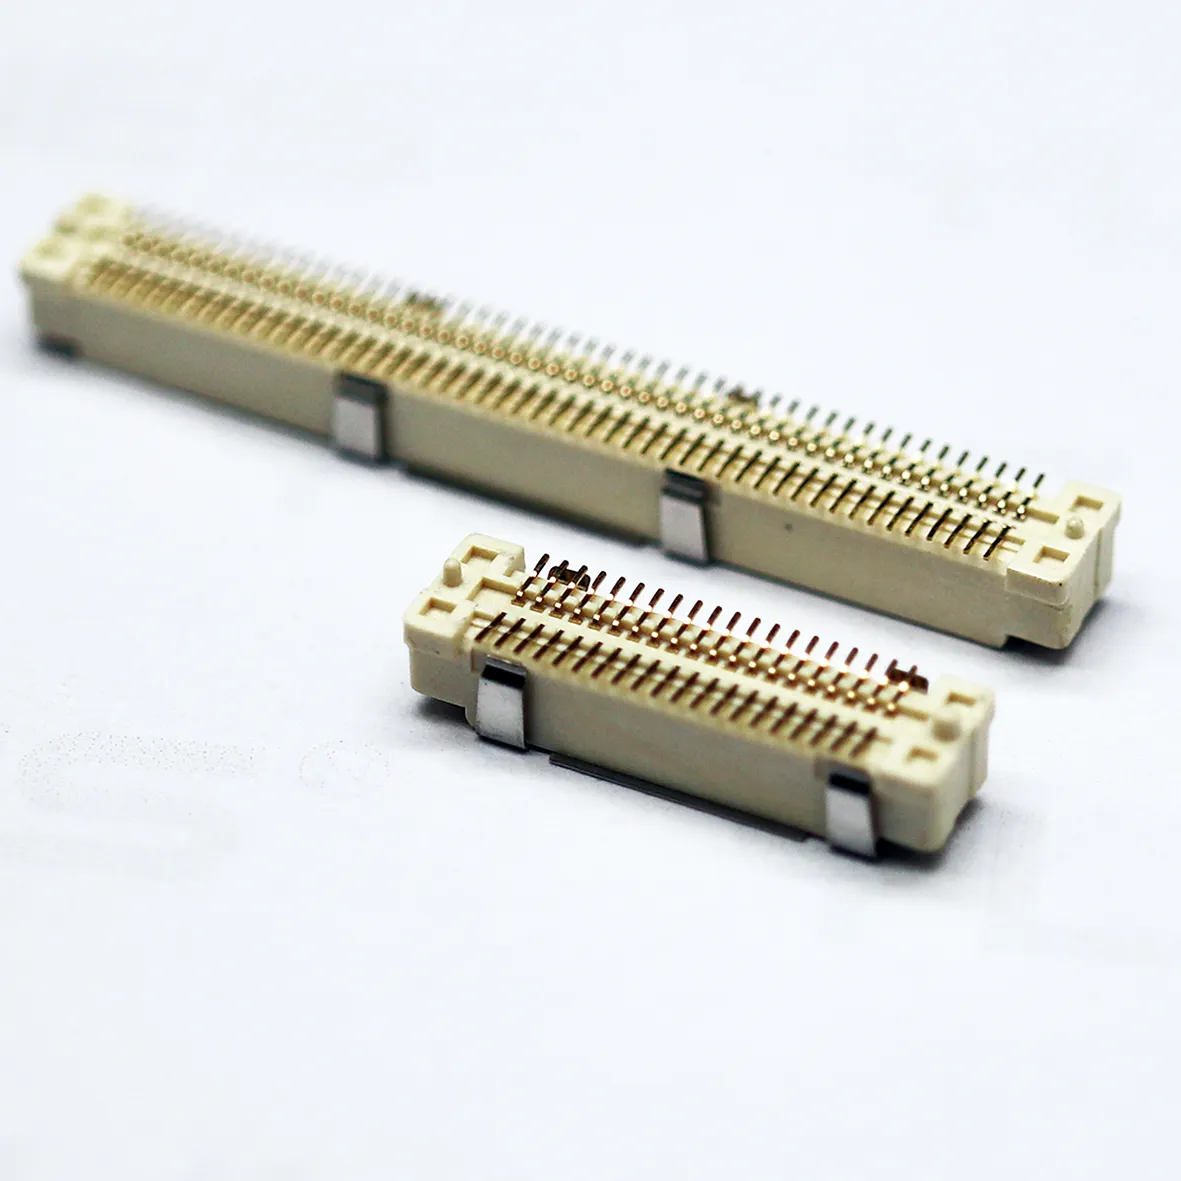 Konektor BTT 0.8mm pitch slot ganda SMT SMD jantan papan PCB WANITA ke papan konektor